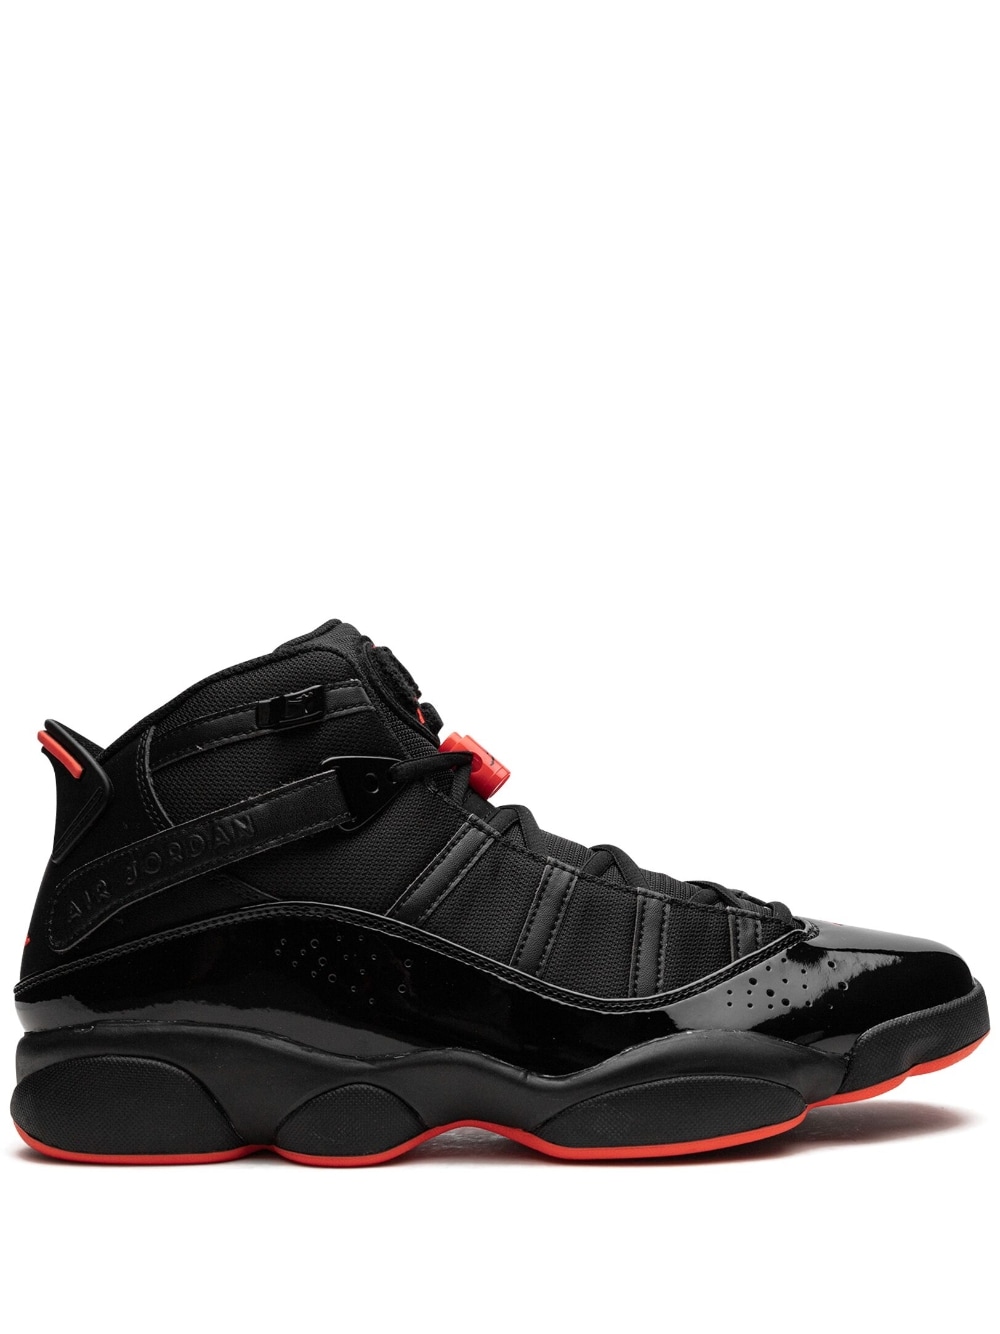 Jordan Jordan 6 Rings "Black Infrared" sneakers